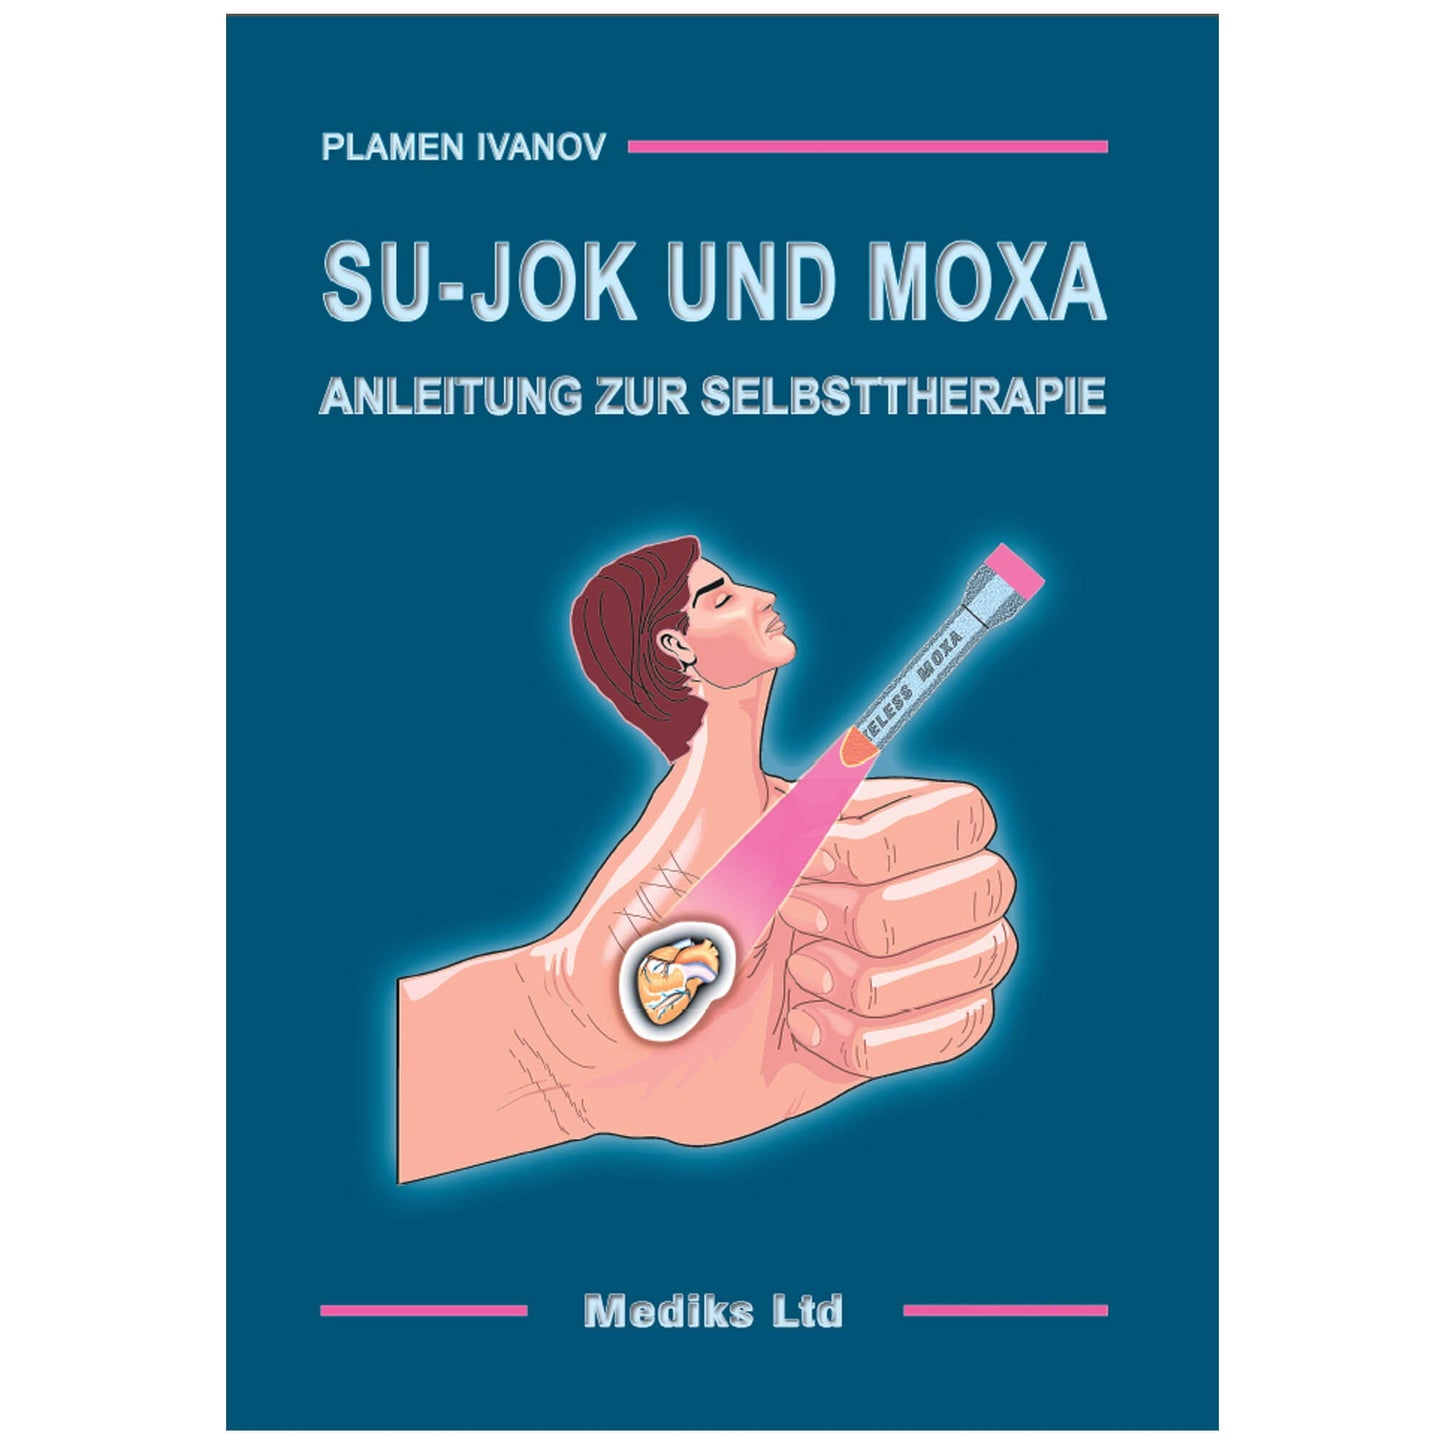 Book "Su-Jok und Moxa"